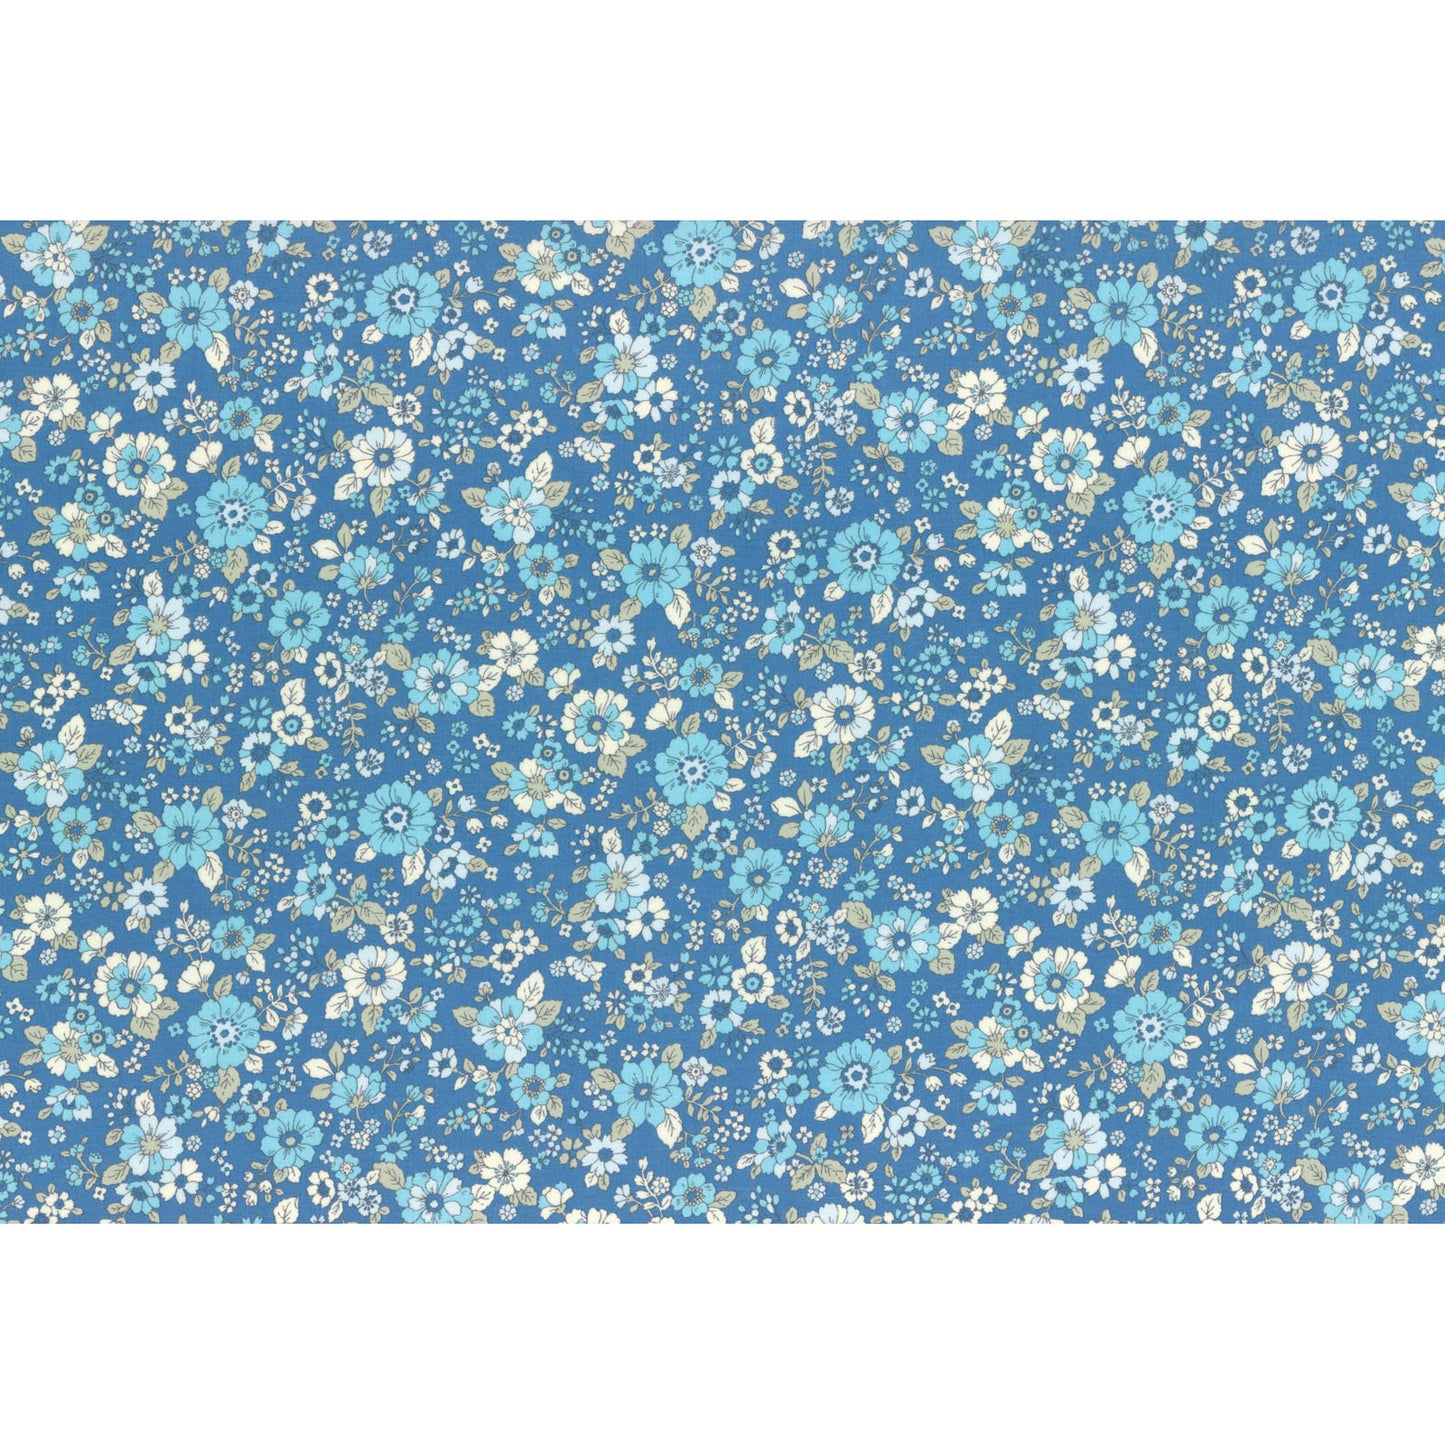 Lecien Memoire a Paris 2019 Blue Floral Cotton Lawn Yardage